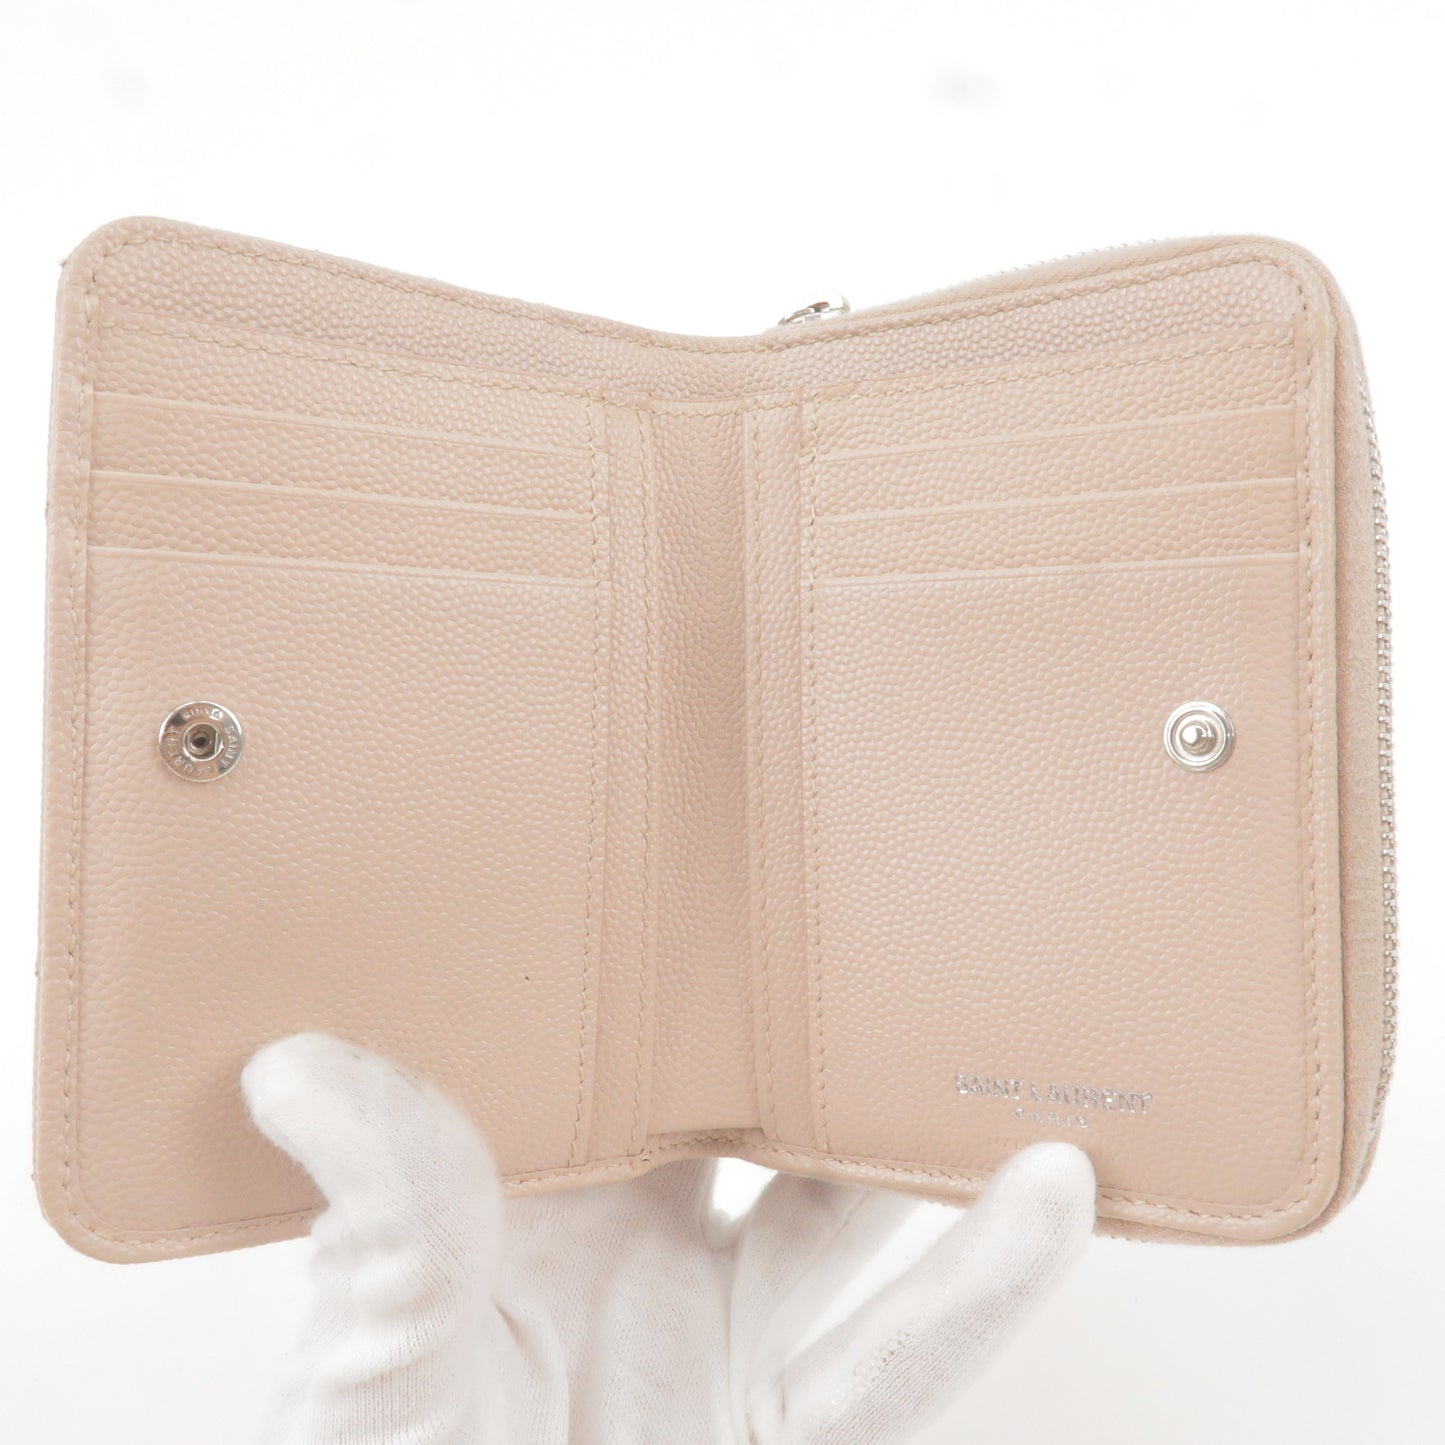 Saint Laurent PARIS YSL Leather Bi-Folded Wallet Beige 403723